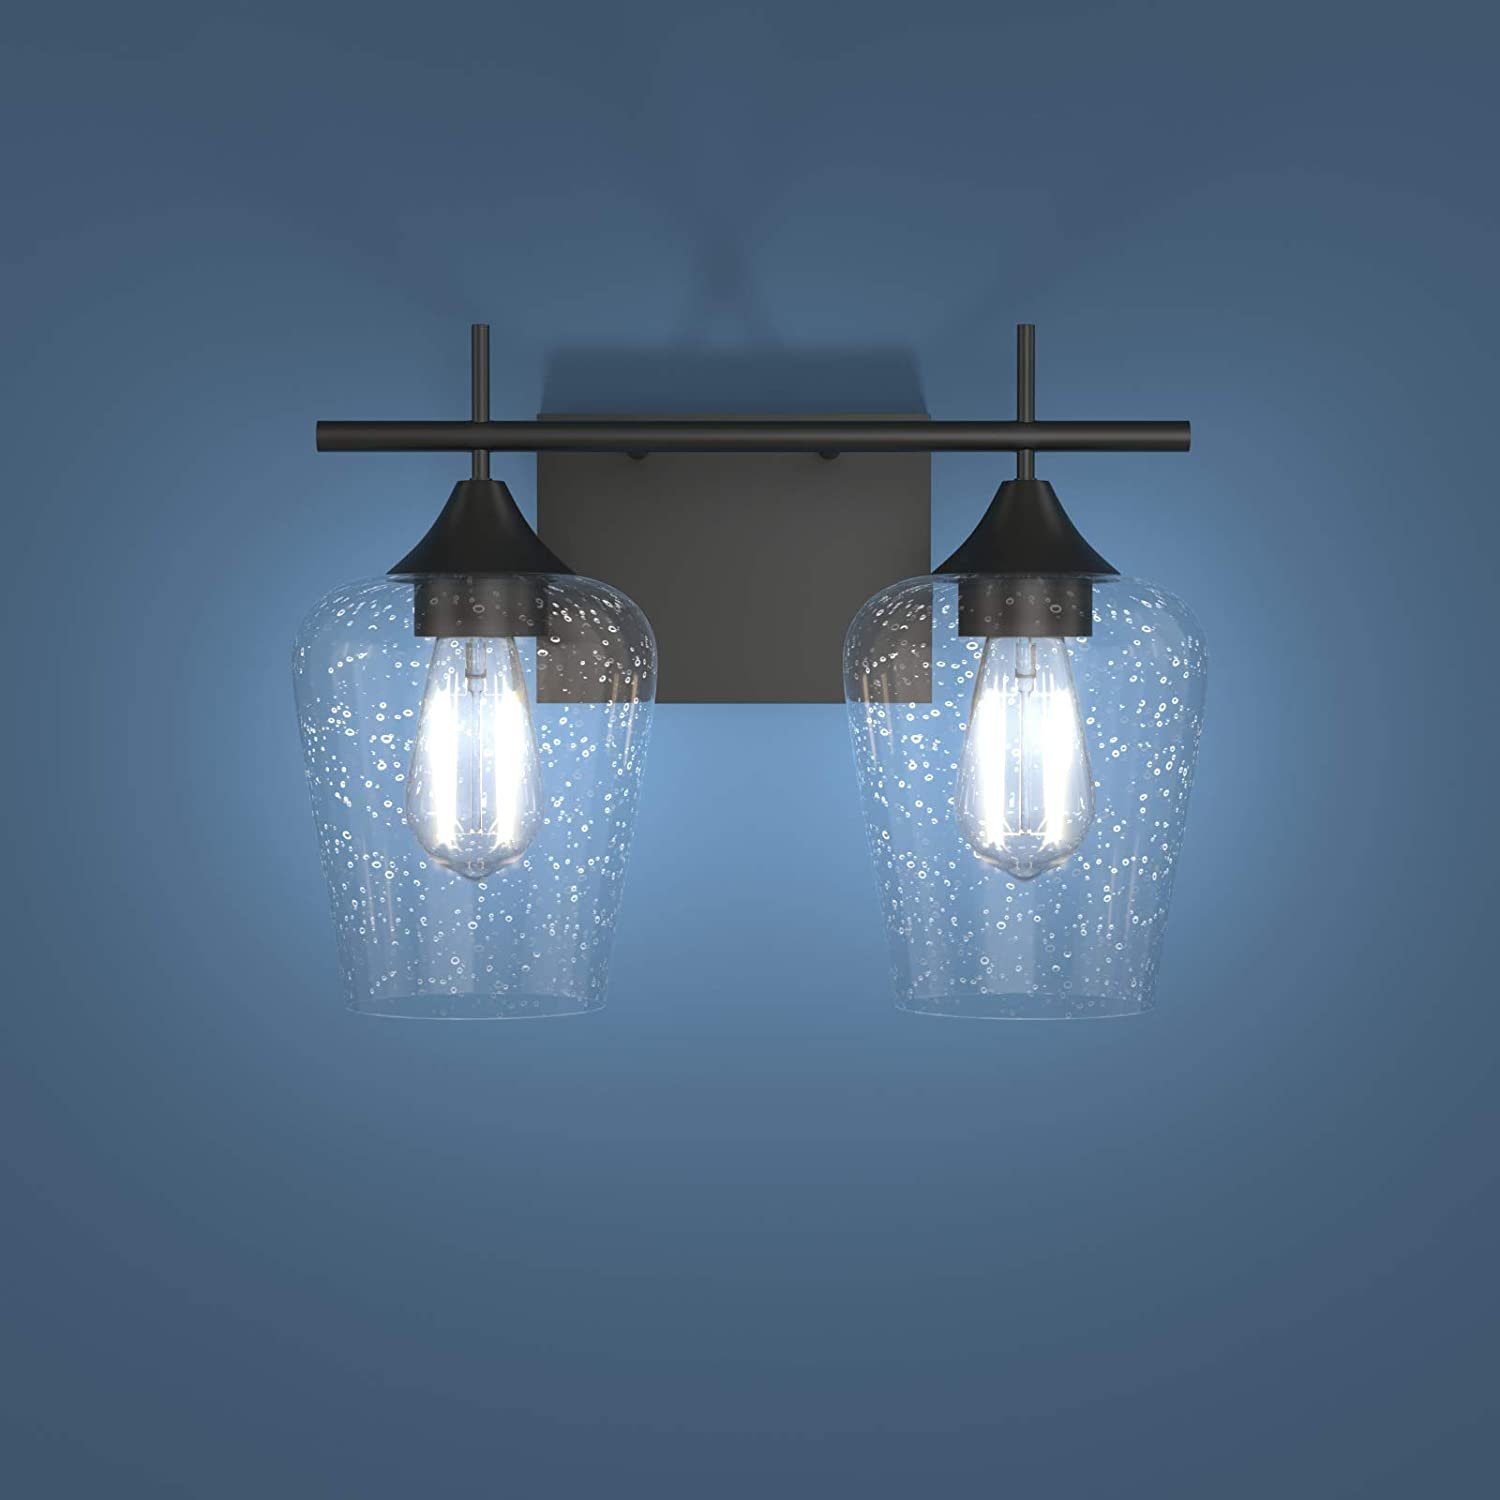 Design LED Badleuchte Wandleuchte Badezimmer Wandlampe Leuchte Wandstrahler Glas 